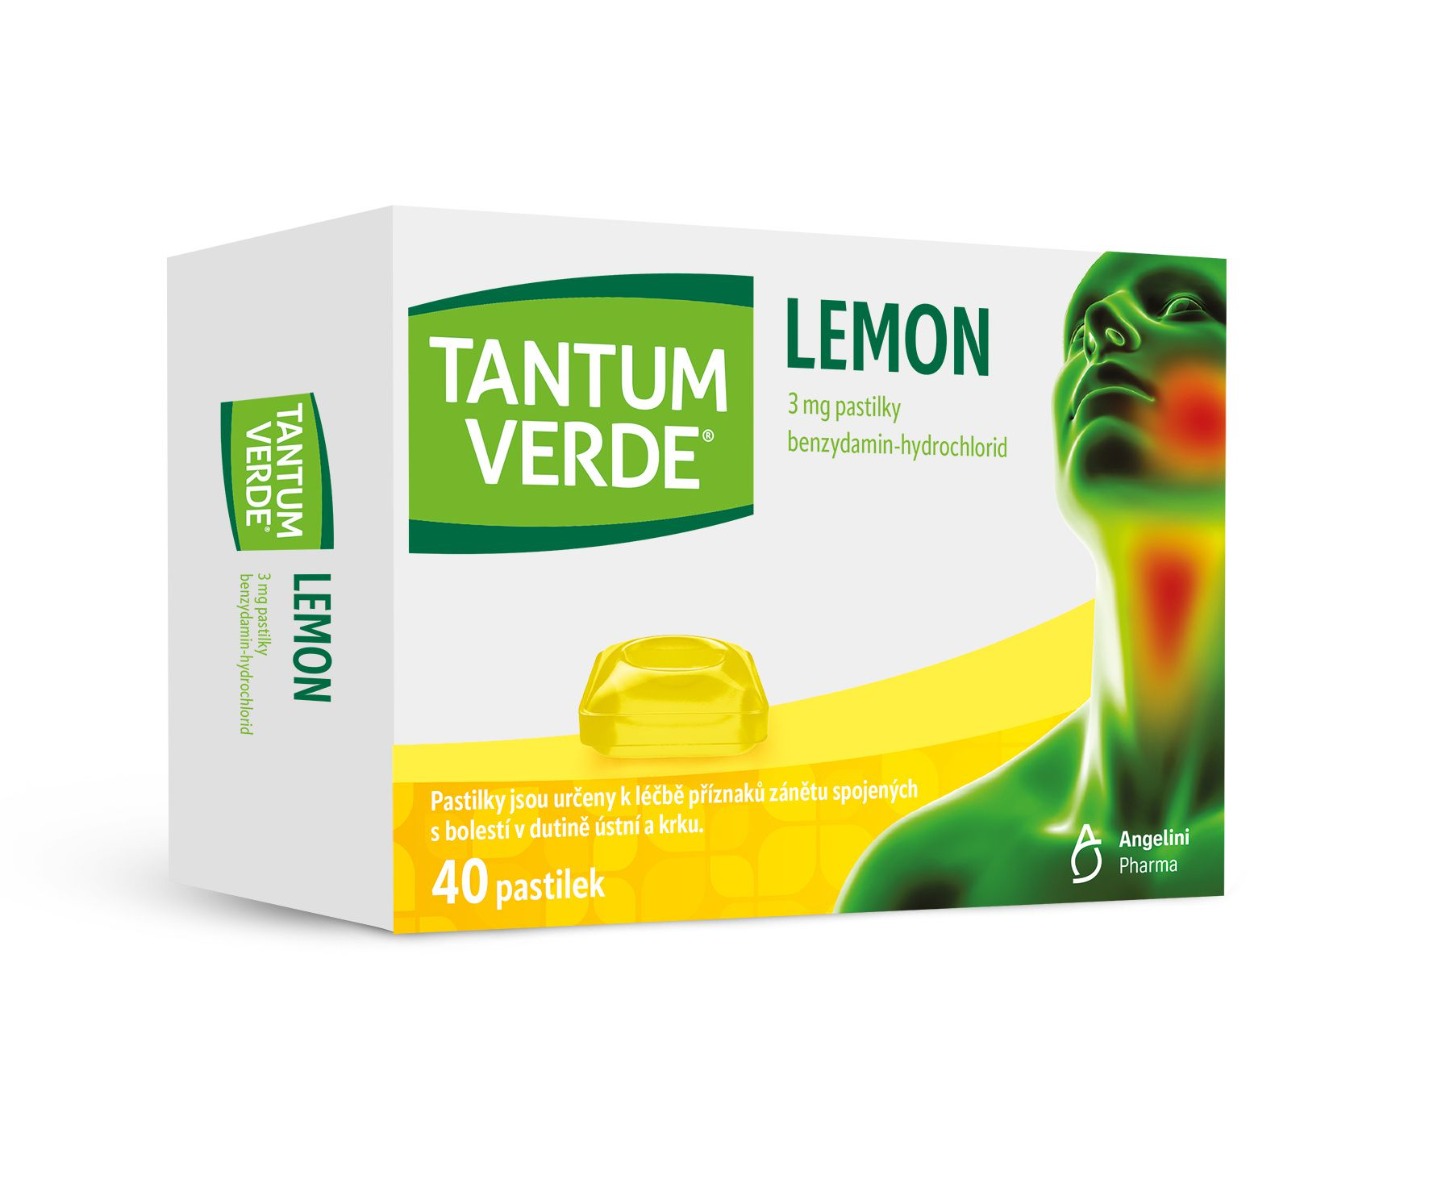 Tantum verde Lemon 3 mg 40 pastilek Tantum verde